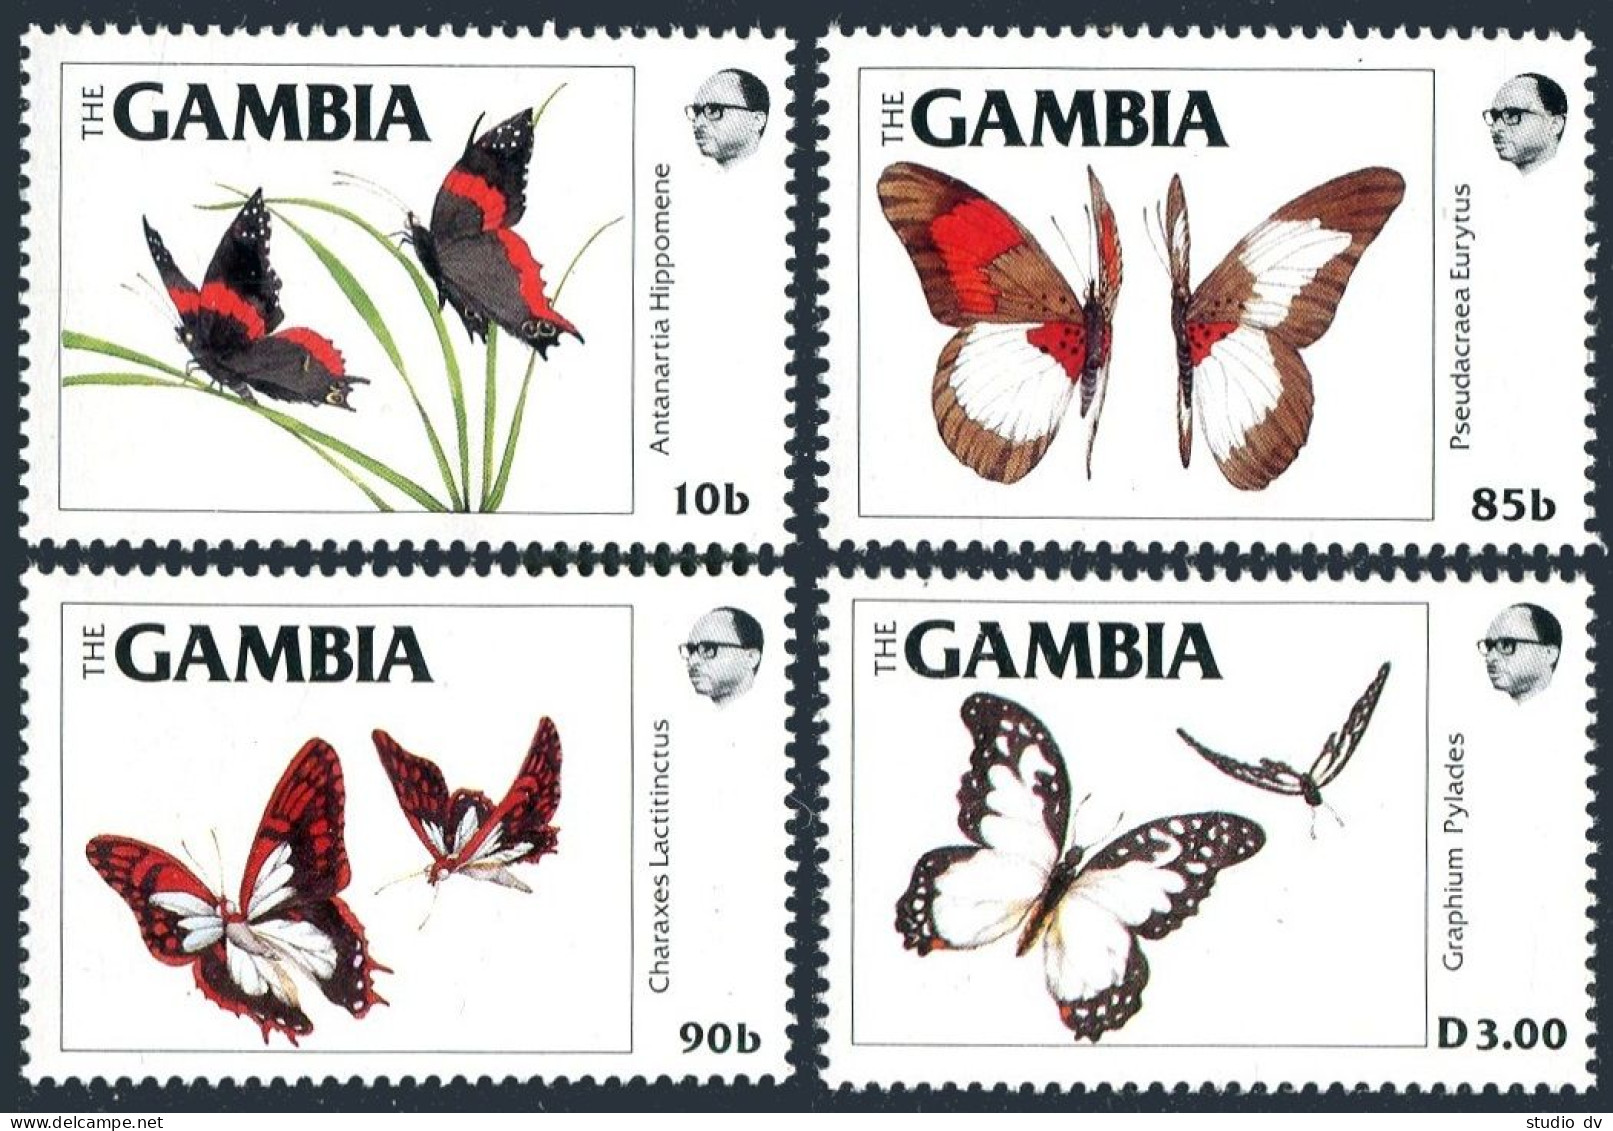 Gambia 533-536, MNH. Michel . Butterflies 1984. - Gambia (1965-...)